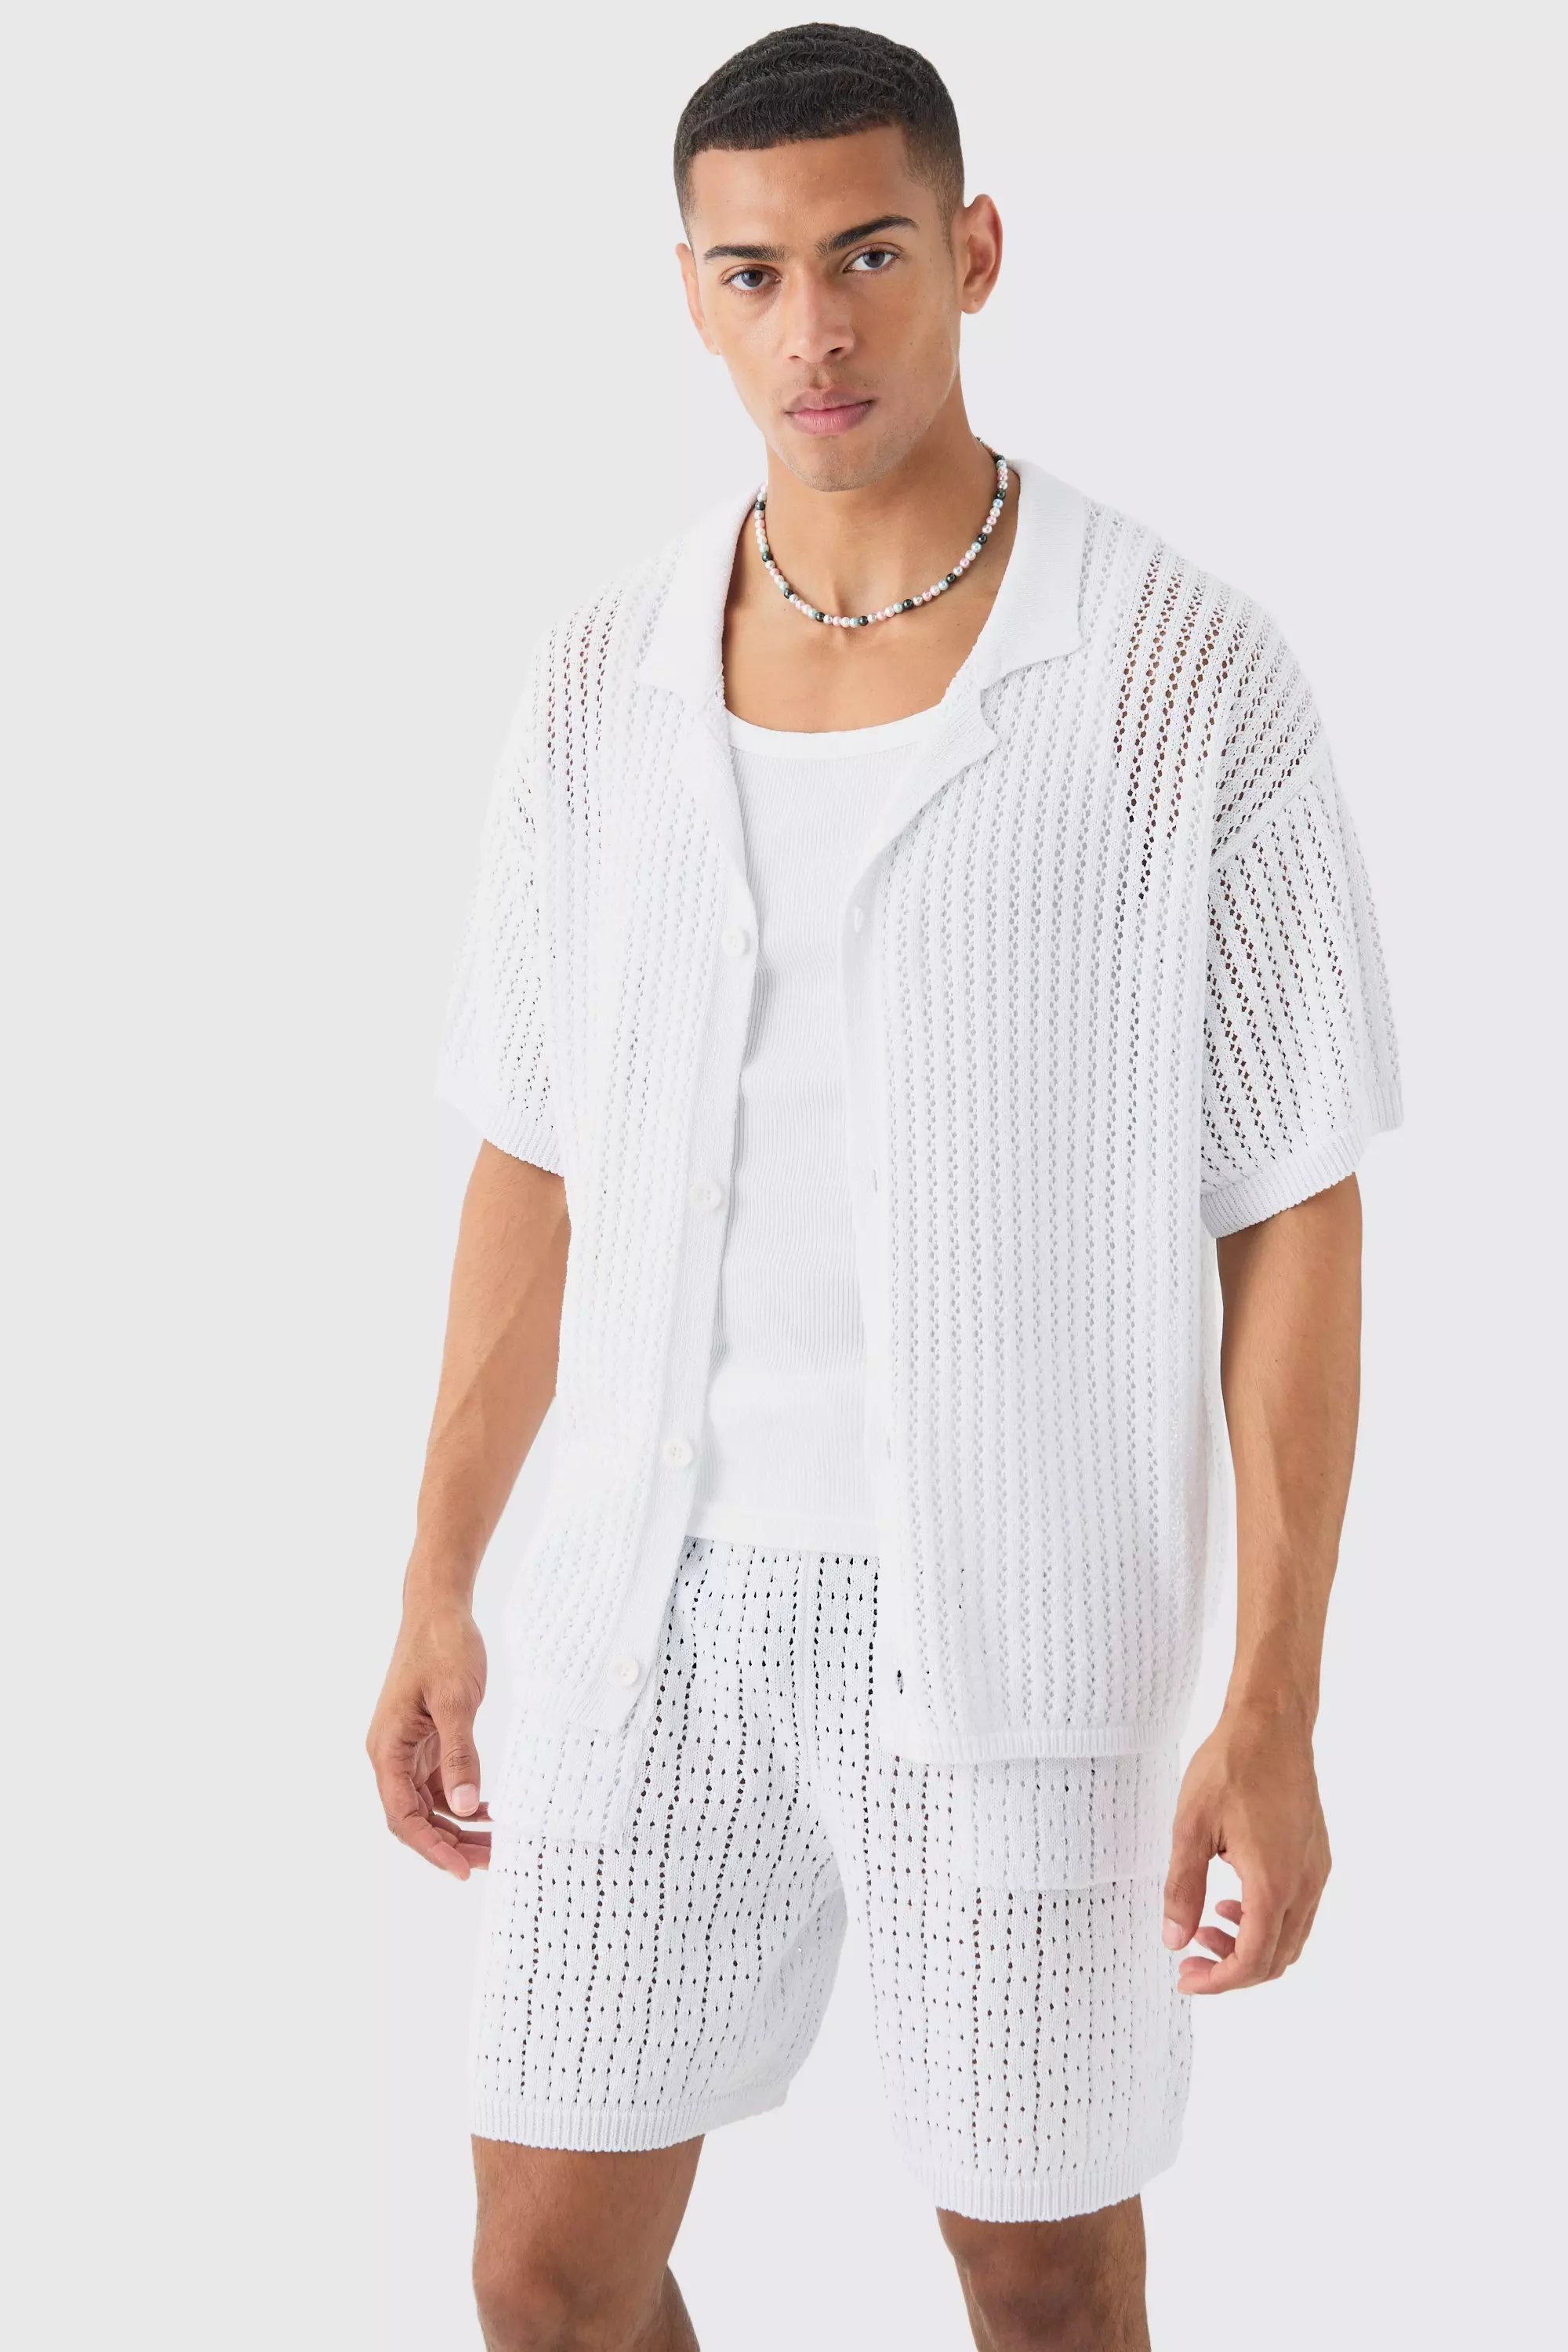 Boxy Crochet Open Knit Revere Shirt In White White